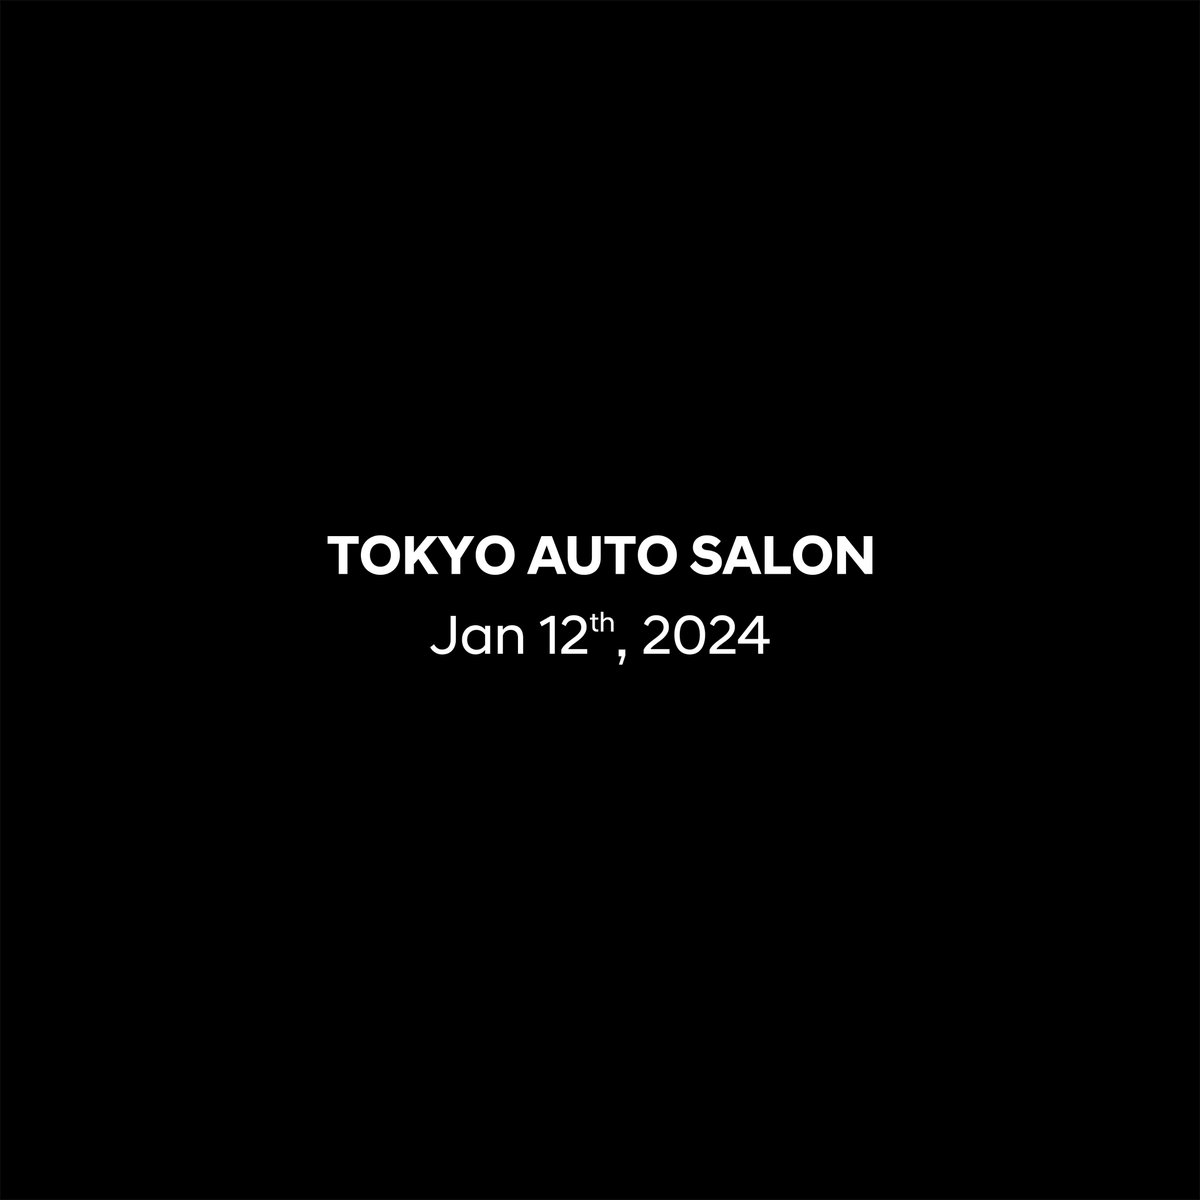 2024/1/12 11:30
#東京オートサロン でお披露目予定。

#HyundaiN #NPX1 #NPerformanceParts  #HighPerformance #Neverjustdrive
#ヒョンデ #TAS2024 #TOKYOAUTOSALON2024